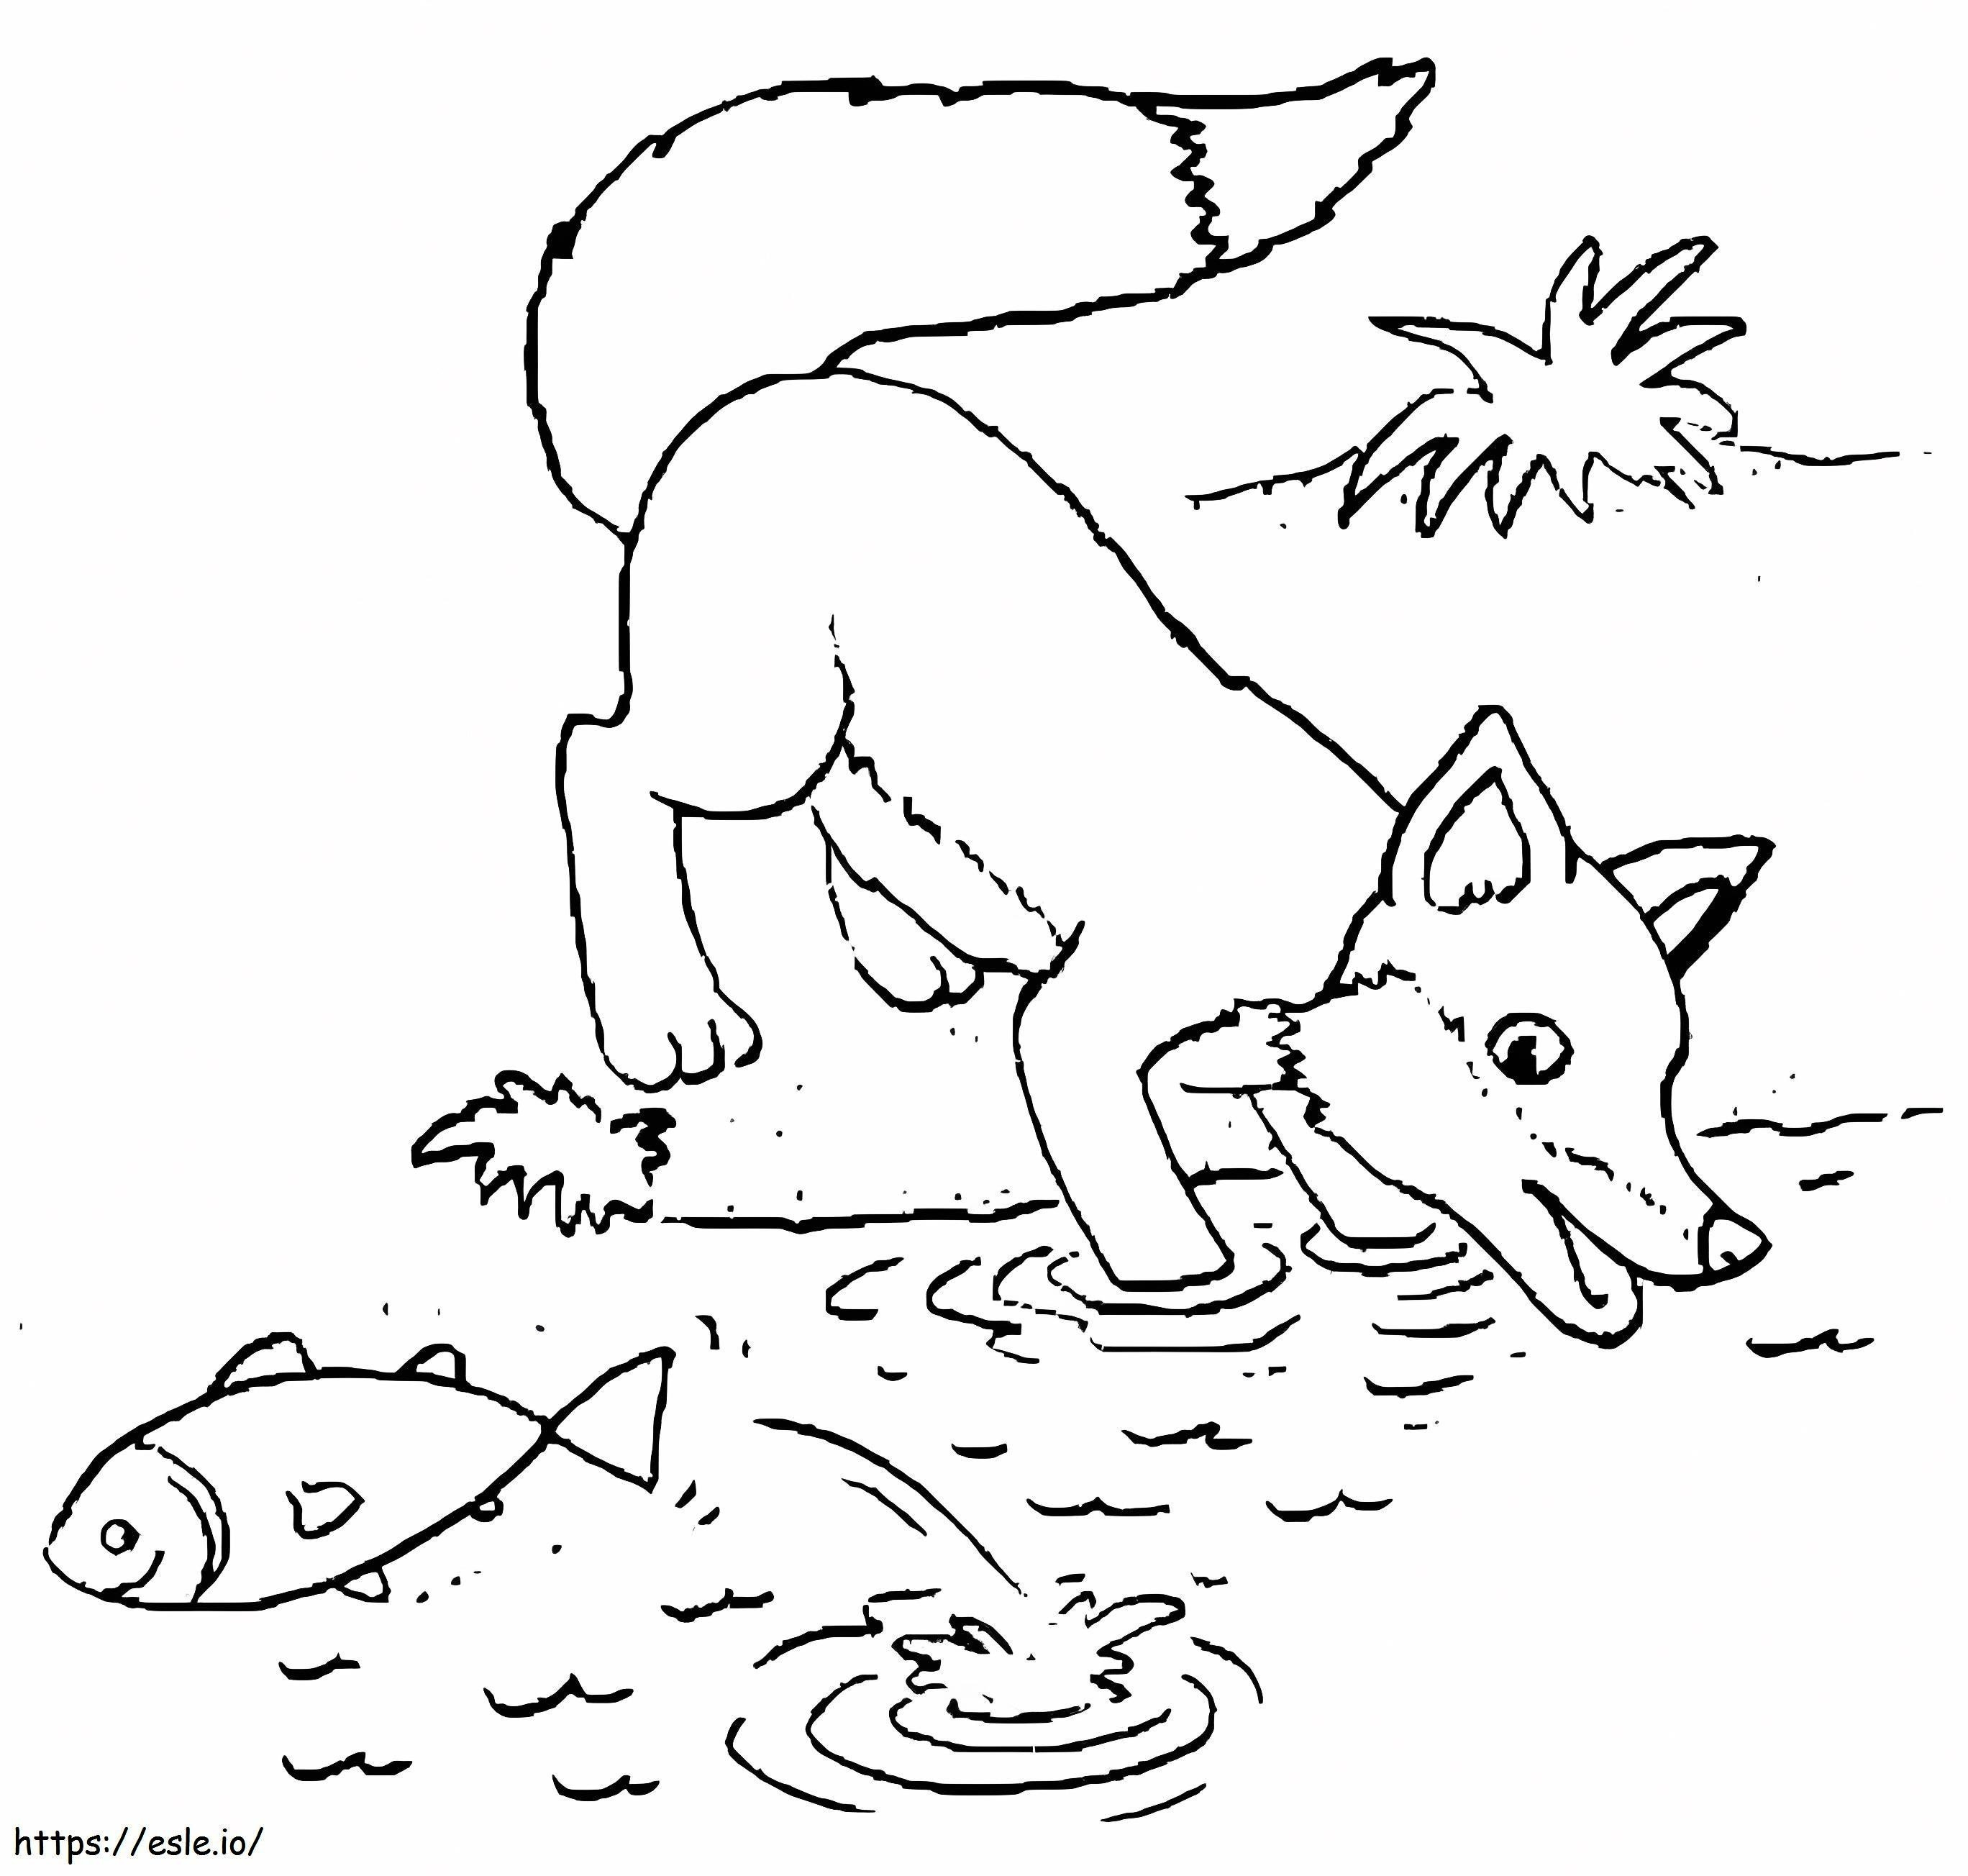 De vos vangt vis kleurplaat kleurplaat